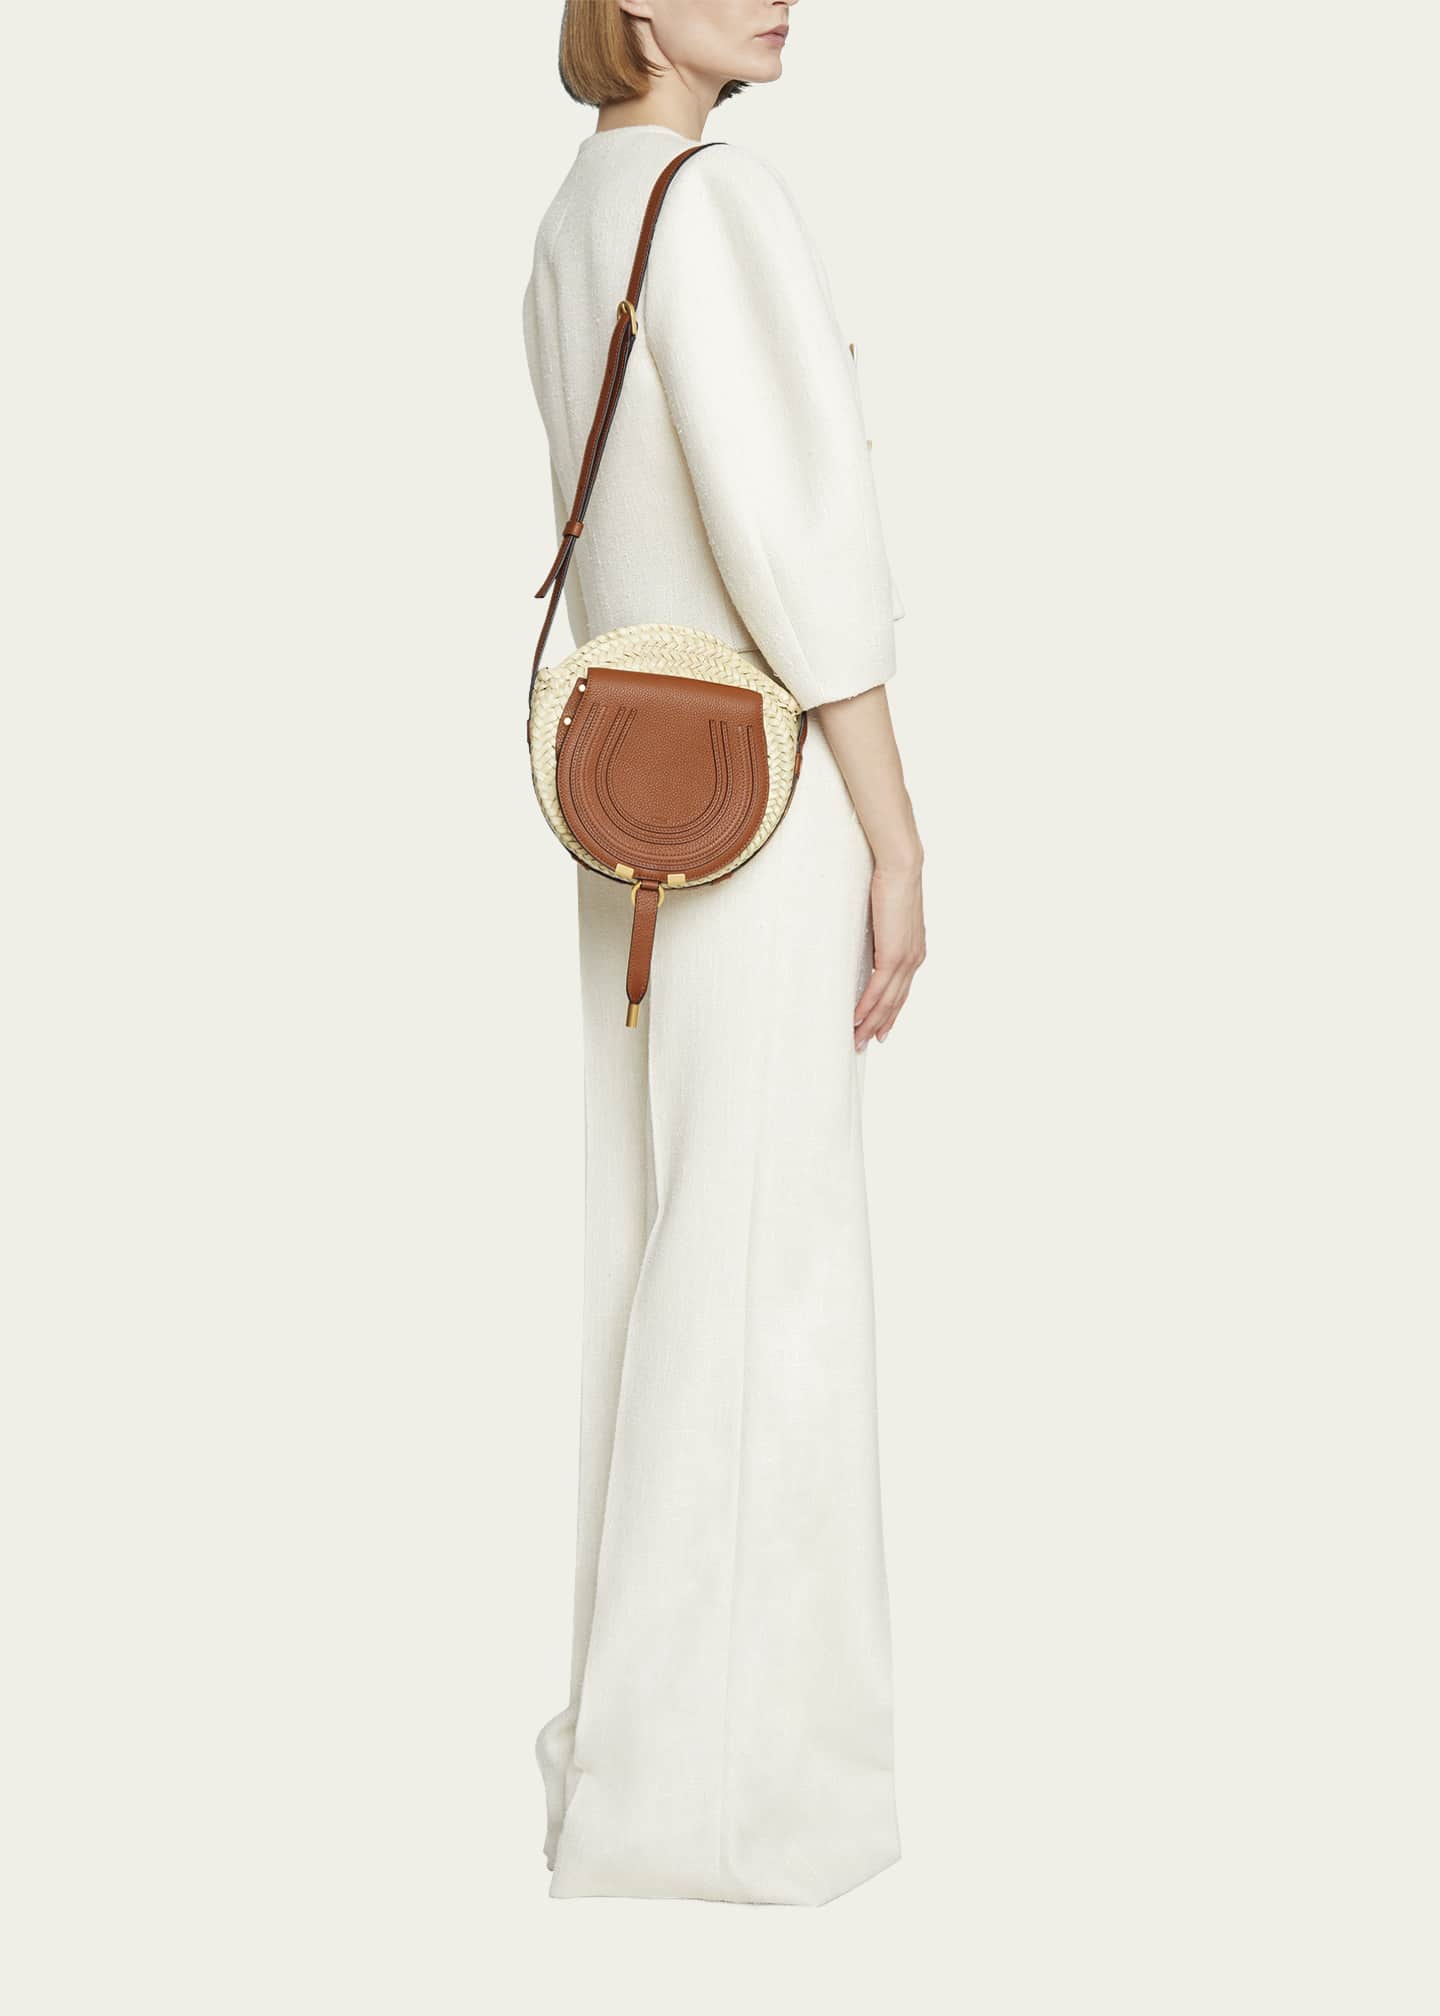 Chloe Marcie Raffia & Leather Crossbody Bag - Bergdorf Goodman